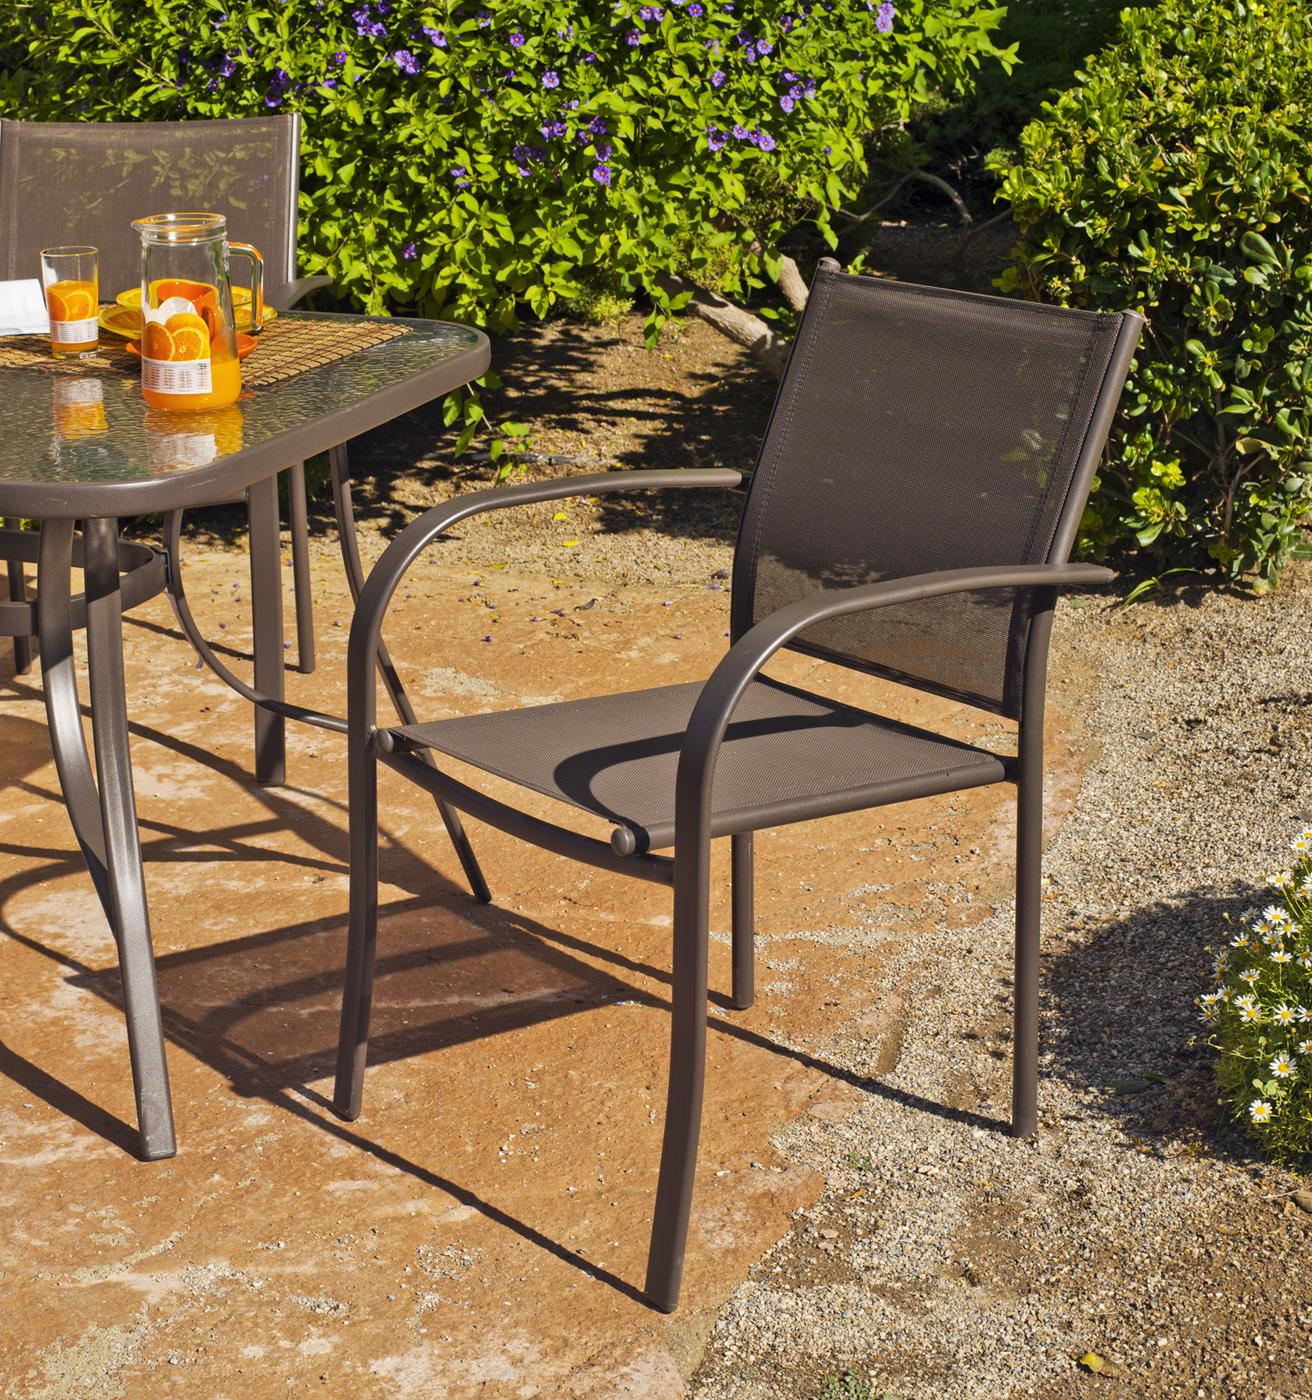 Set Acero Macao-Barcelona 70-2 - Conjunto de acero color bronce: mesa redonda de 70 cm. Con tapa de cristal templado + 2 sillones de acero y textilen